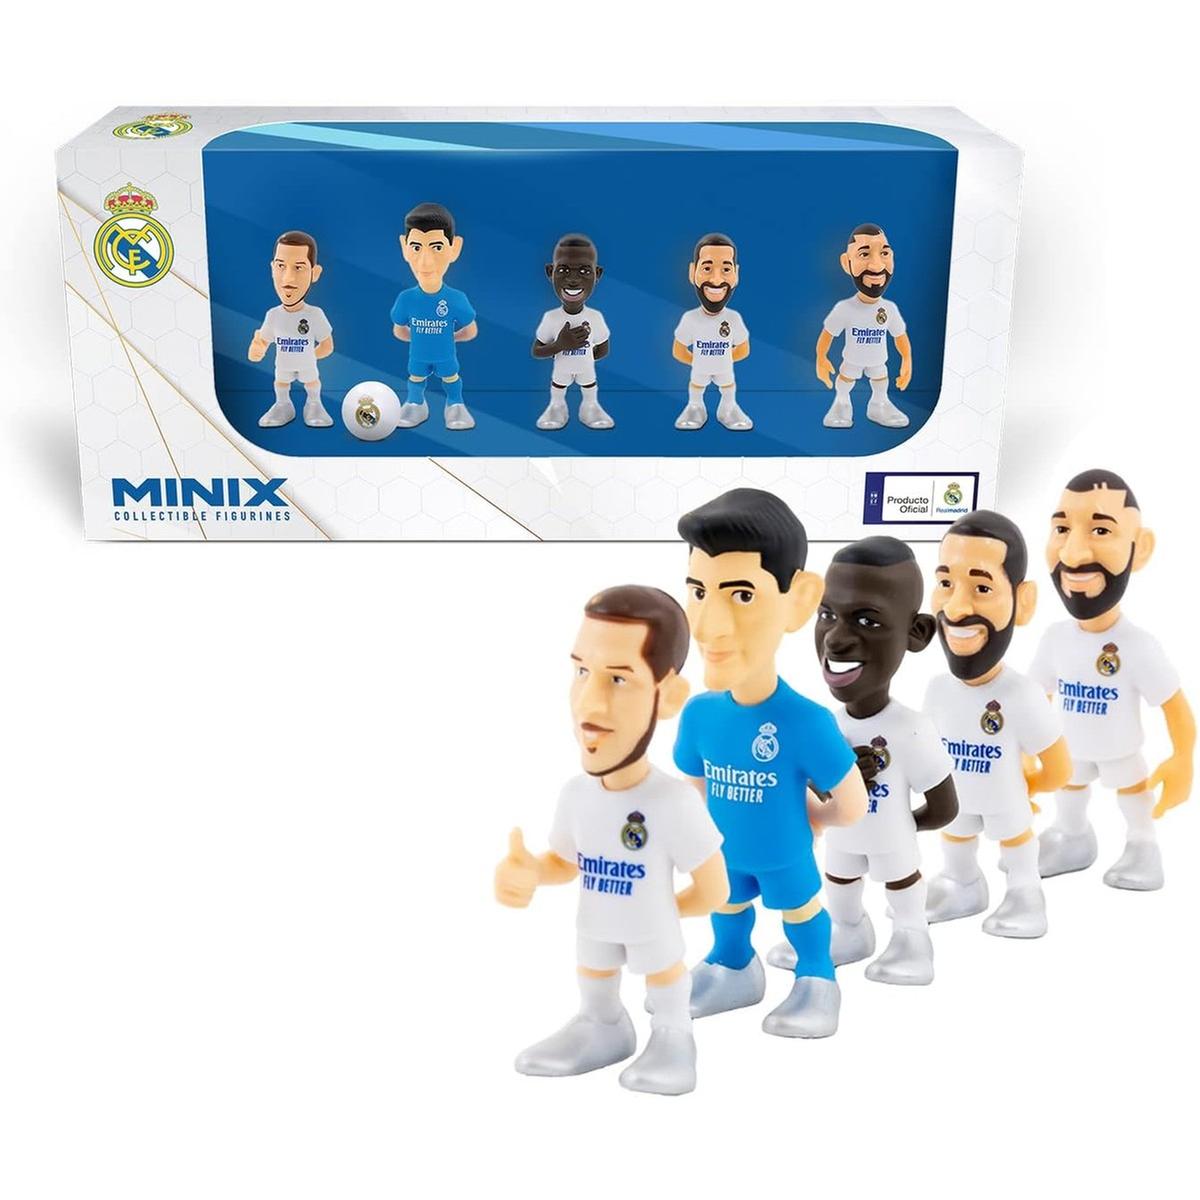 Real Madrid CF - Pack de 5 figuritas de jugadores del Real Madrid